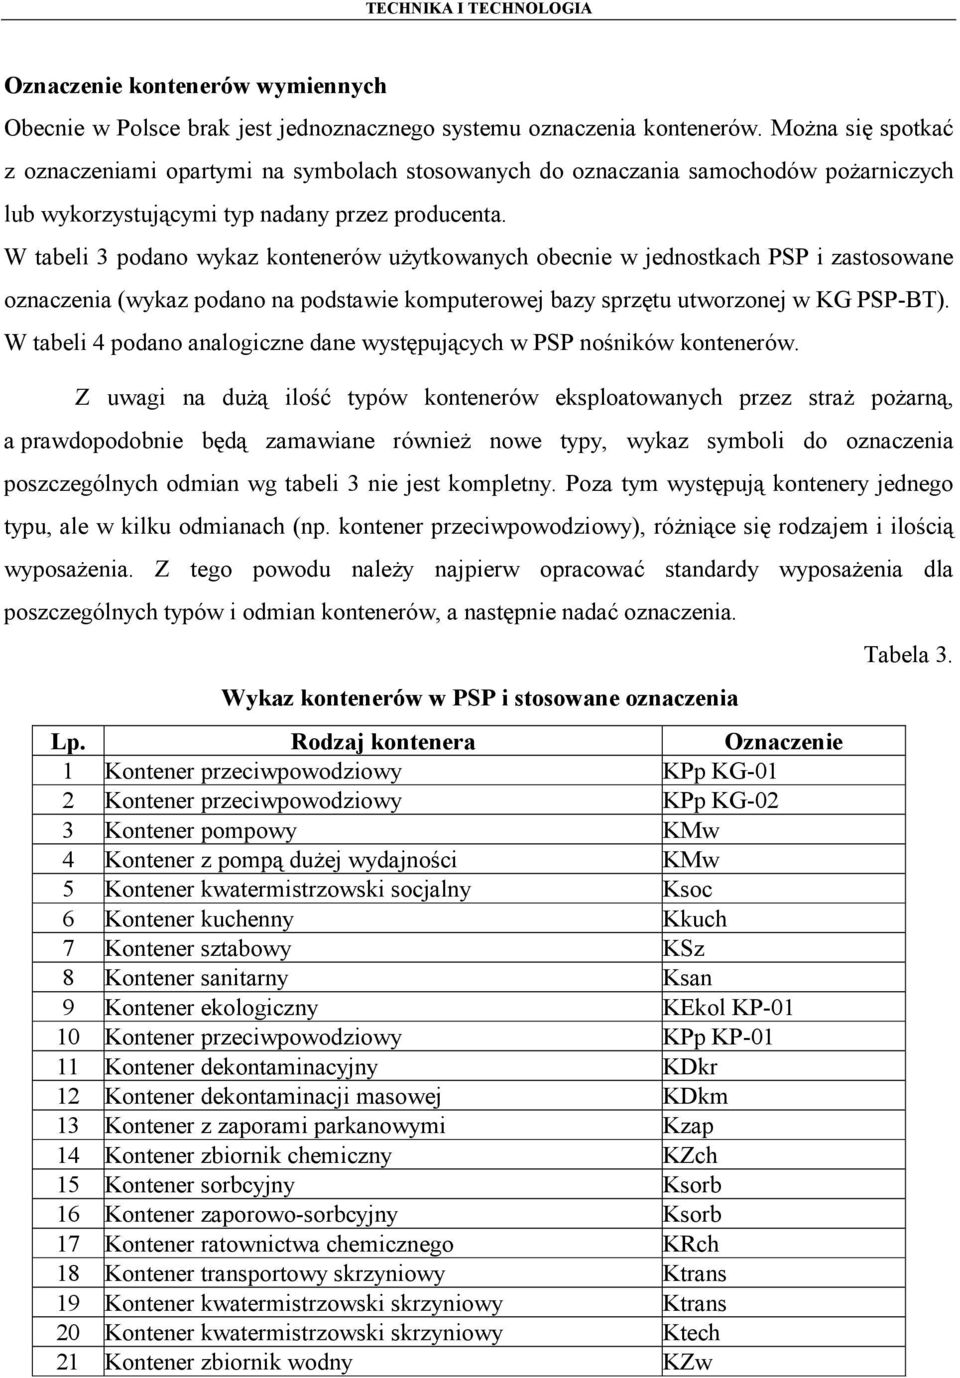 W tabeli 3 podano wykaz kontenerów użytkowanych obecnie w jednostkach PSP i zastosowane oznaczenia (wykaz podano na podstawie komputerowej bazy sprzętu utworzonej w KG PSP-BT).